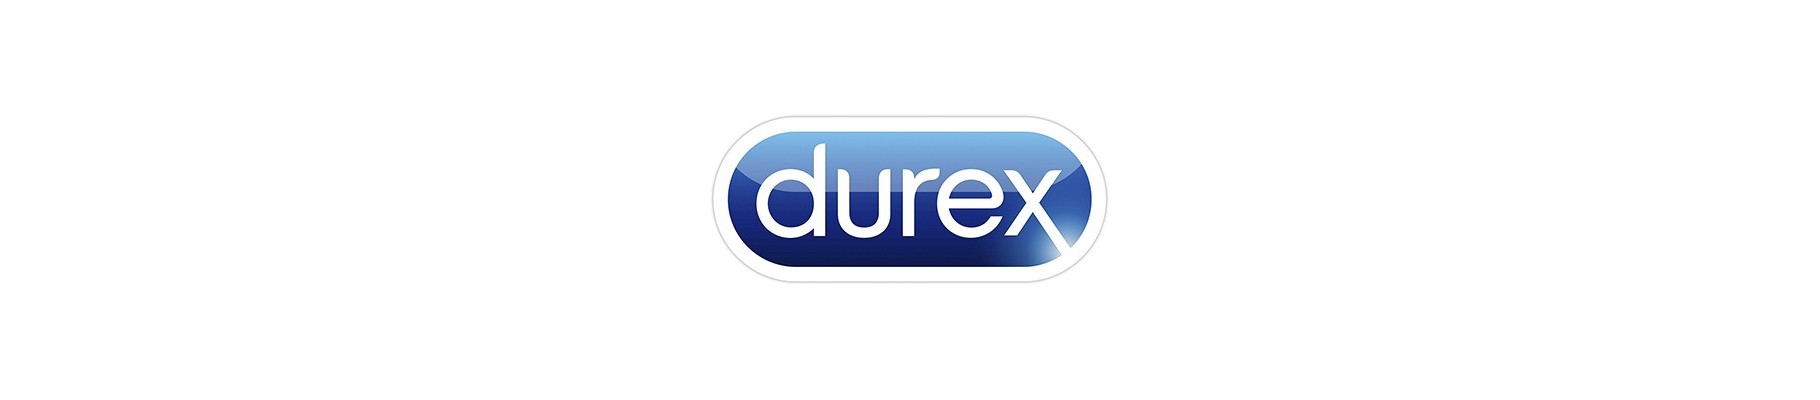 Lai valik kvaliteetseid Durex kondoome| Kondoomipood.ee